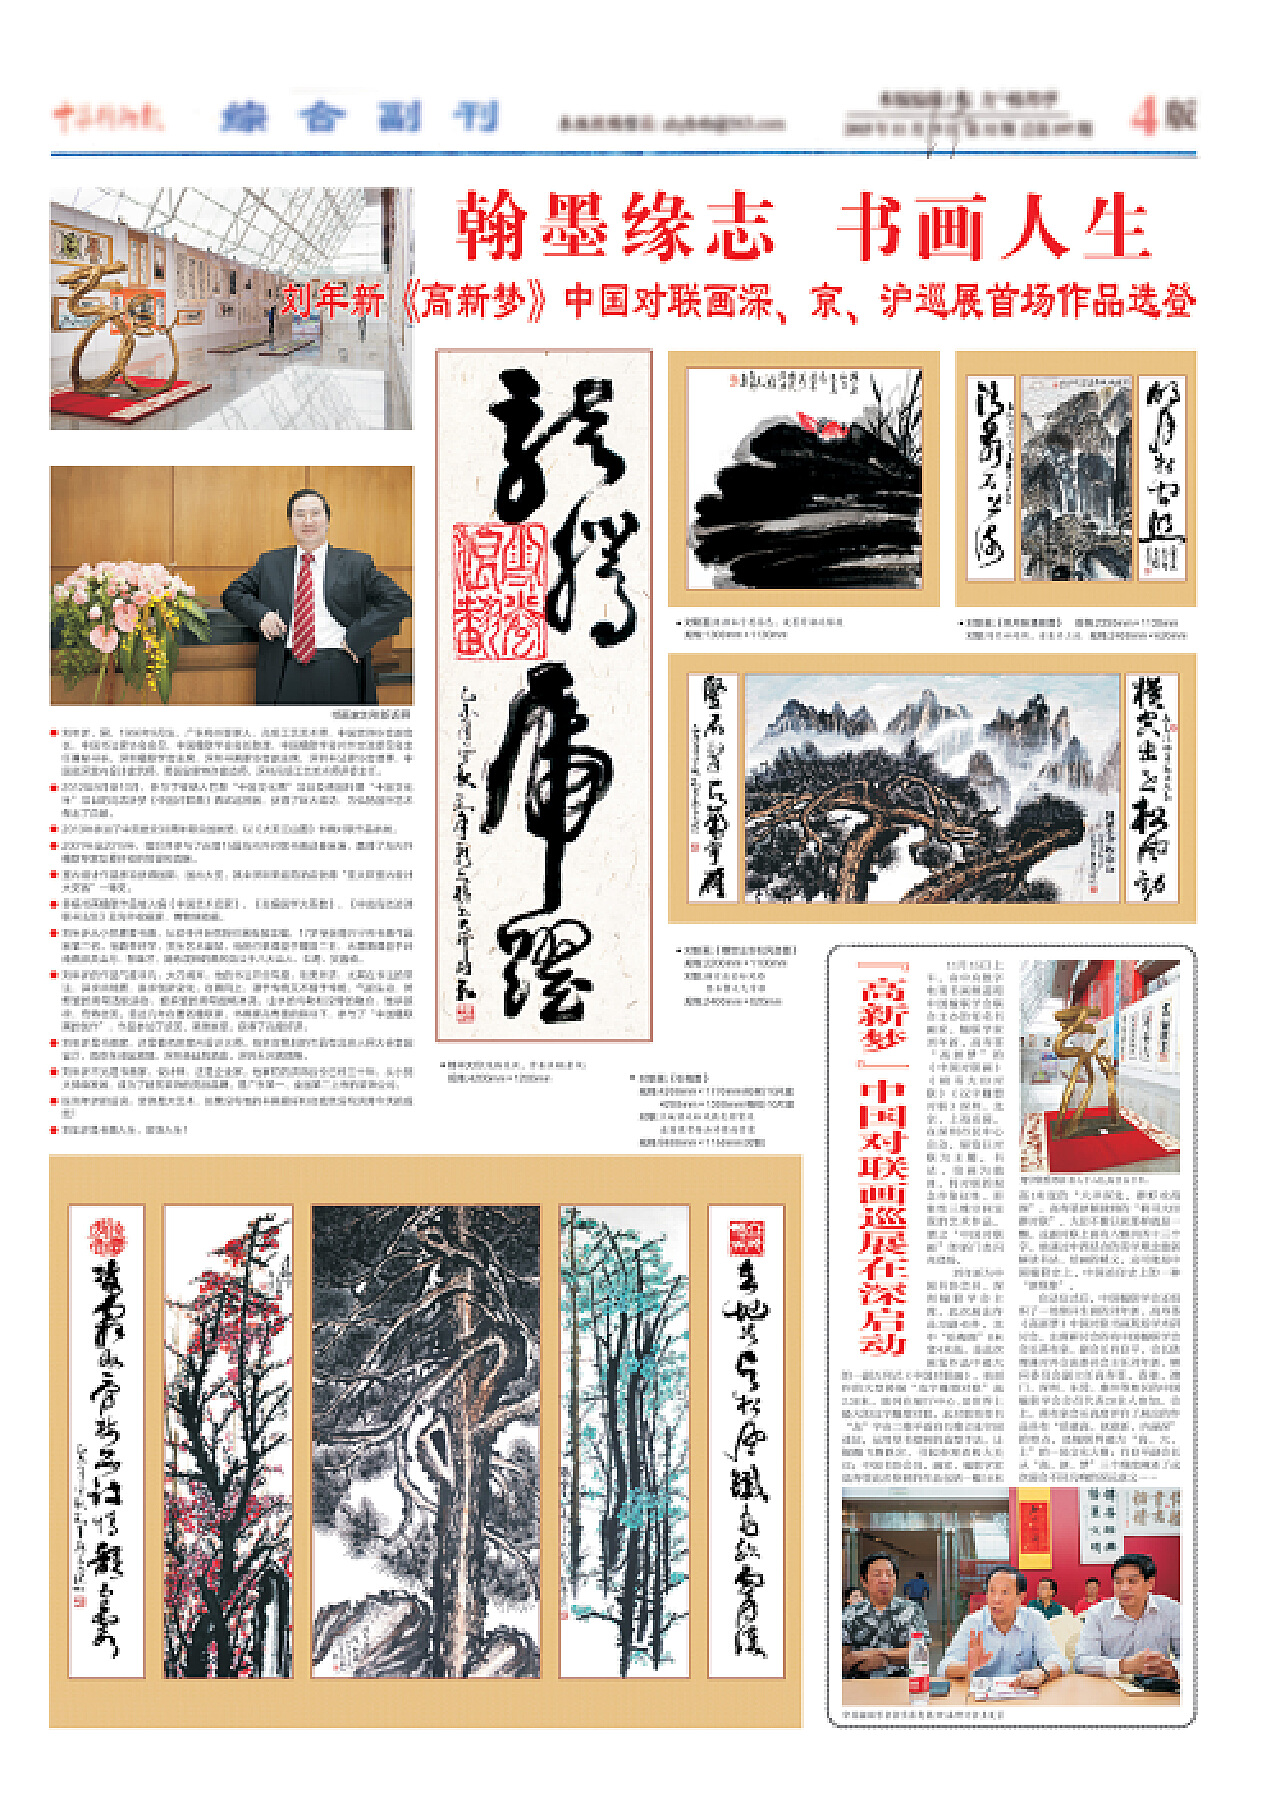 姜连生书画展暨百名书画艺术名家创/销笔会将于3月8号在京召 - 中国第一时间